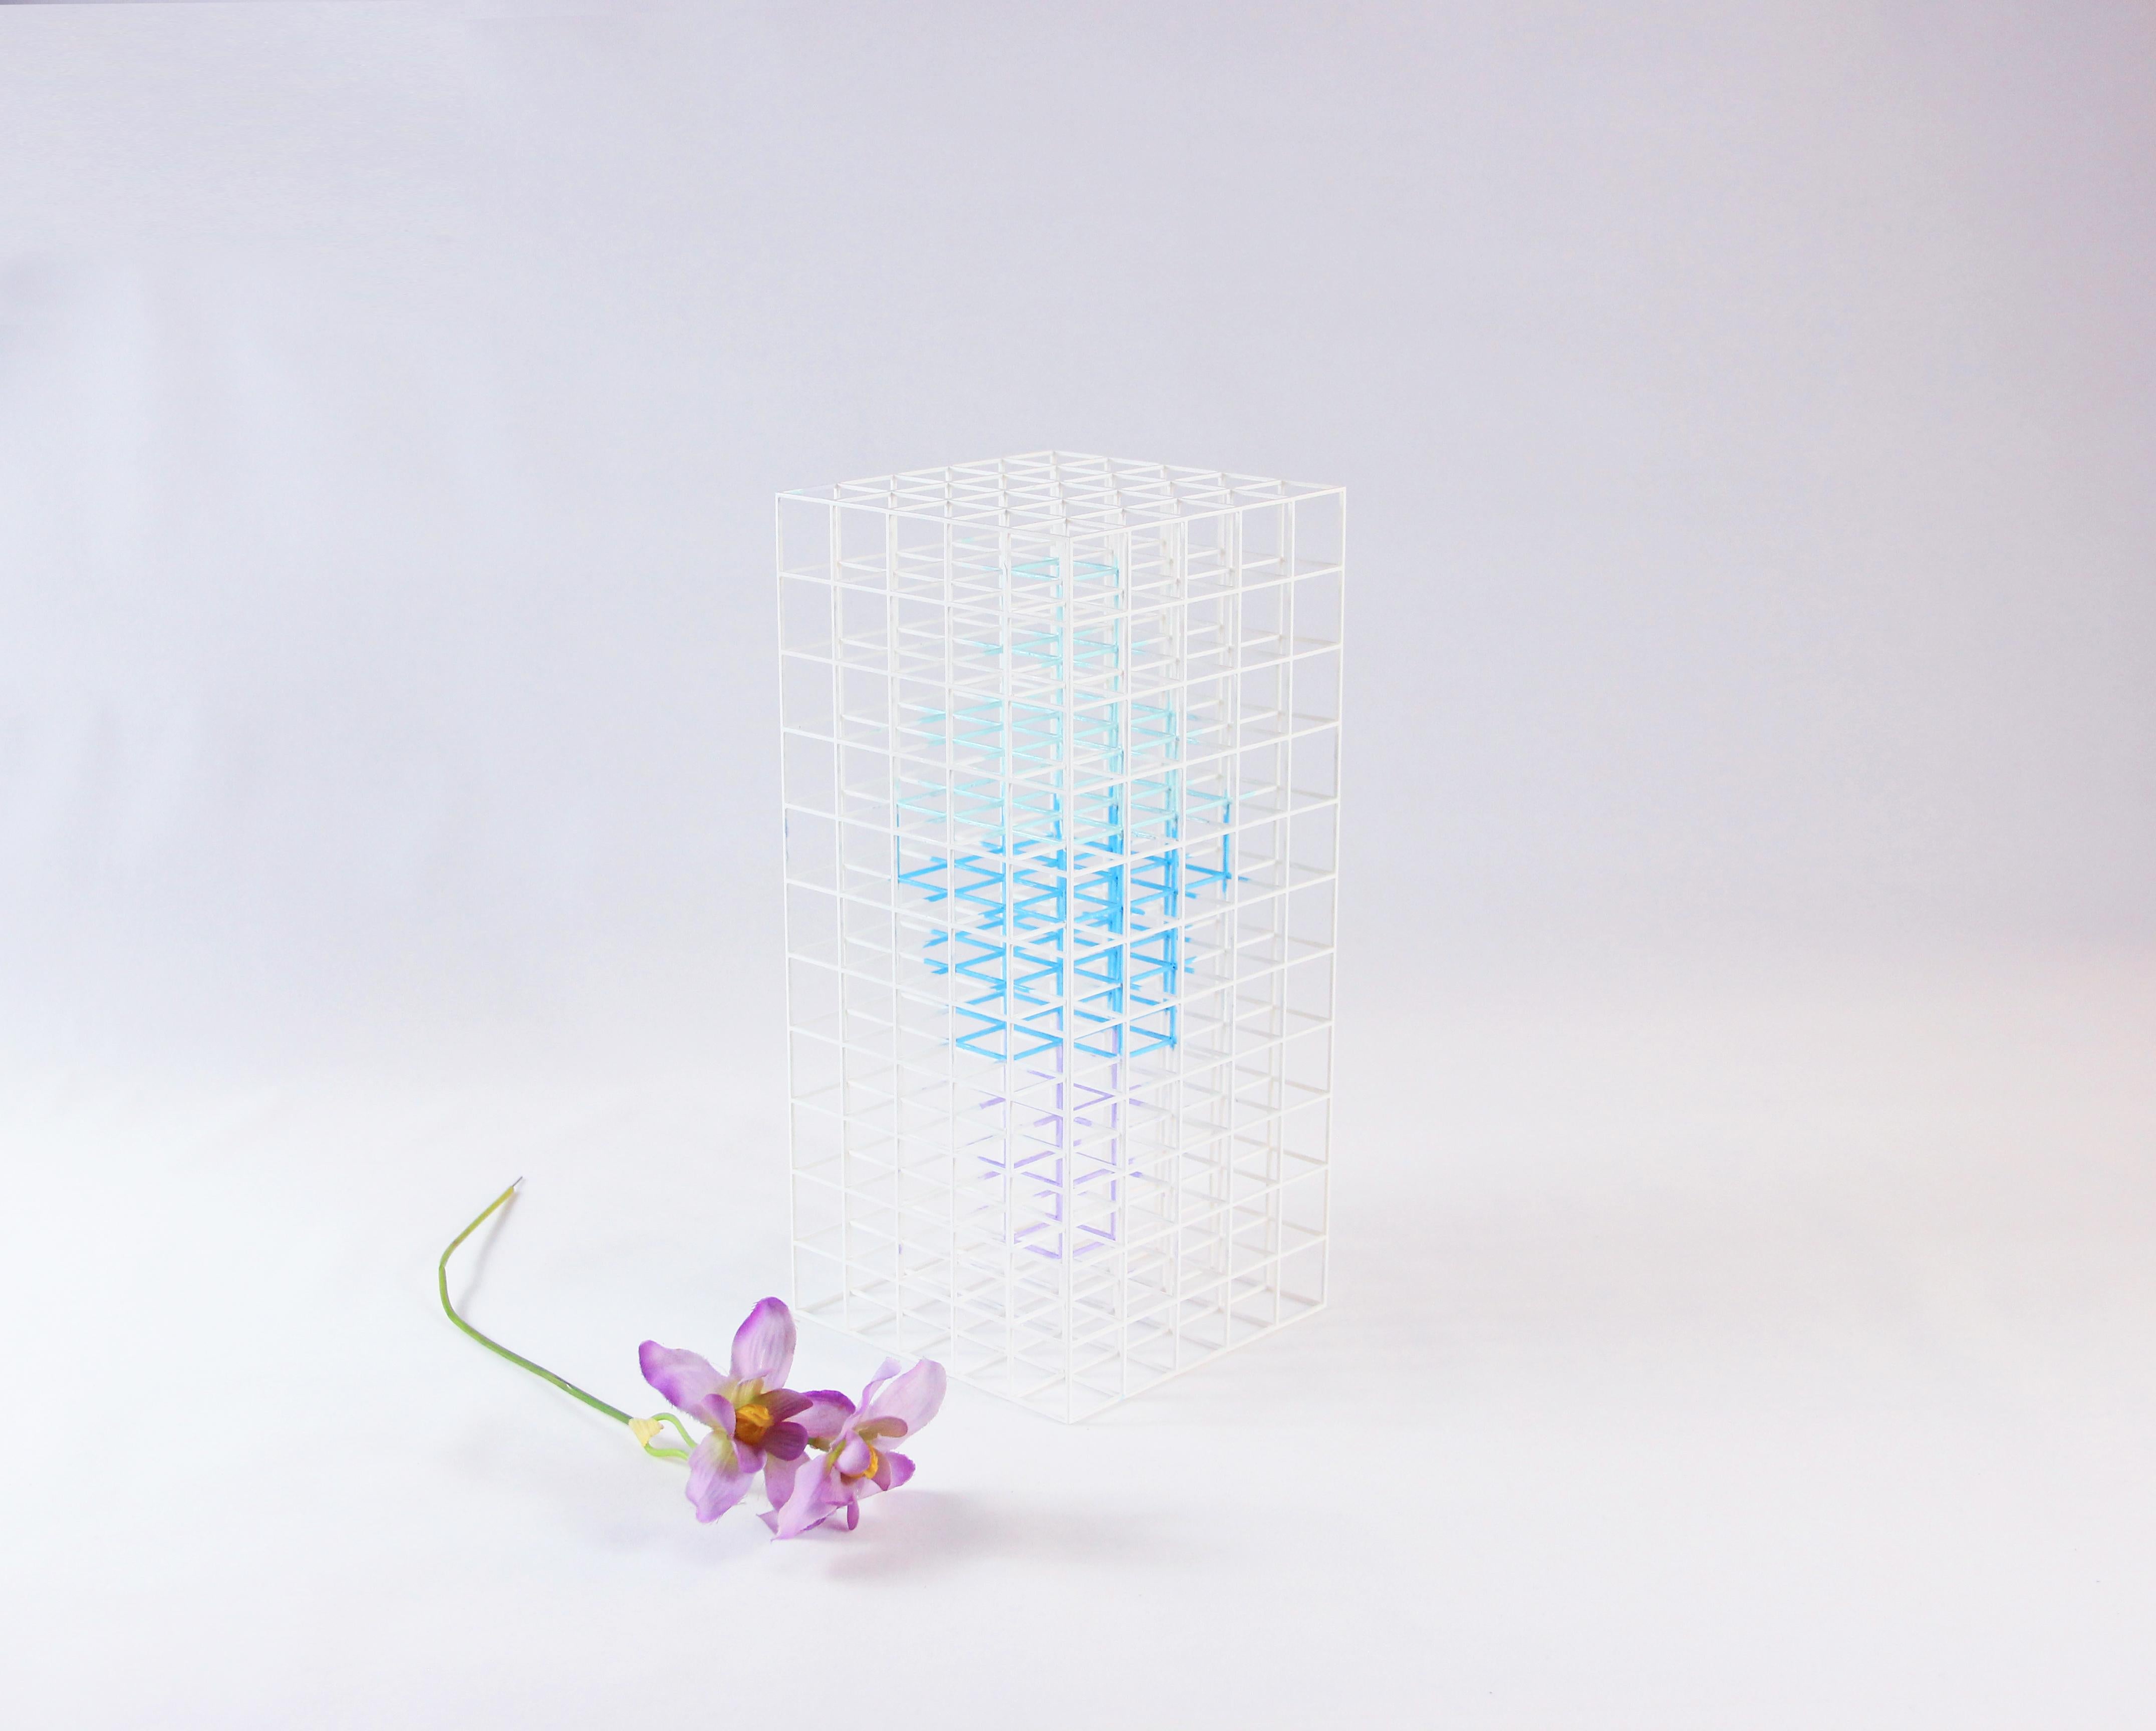 Vasen werden als Gefäße mit Rand definiert, aber nicht als solche. Vase NA 2.0 wurde von Desz entwickelt, um die Beziehung zwischen Mensch und Raum zu erforschen. Es ist ein Konzept über Linien, Farben und die IDEE, scheinbar etwas aus dem Nichts zu